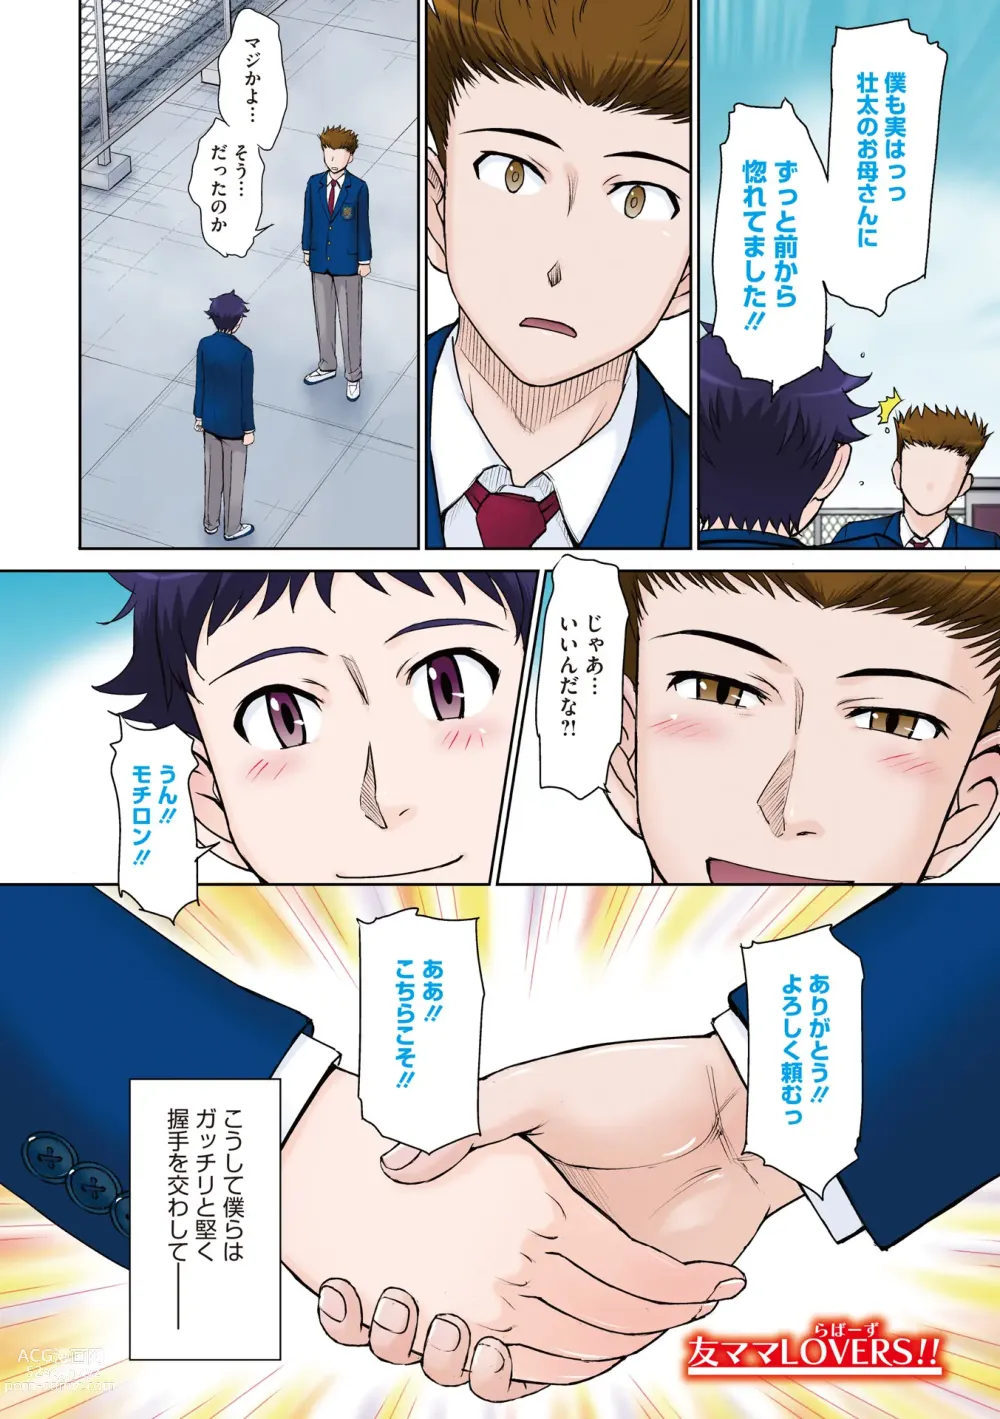 Page 4 of manga Kanjyuku. Eromental